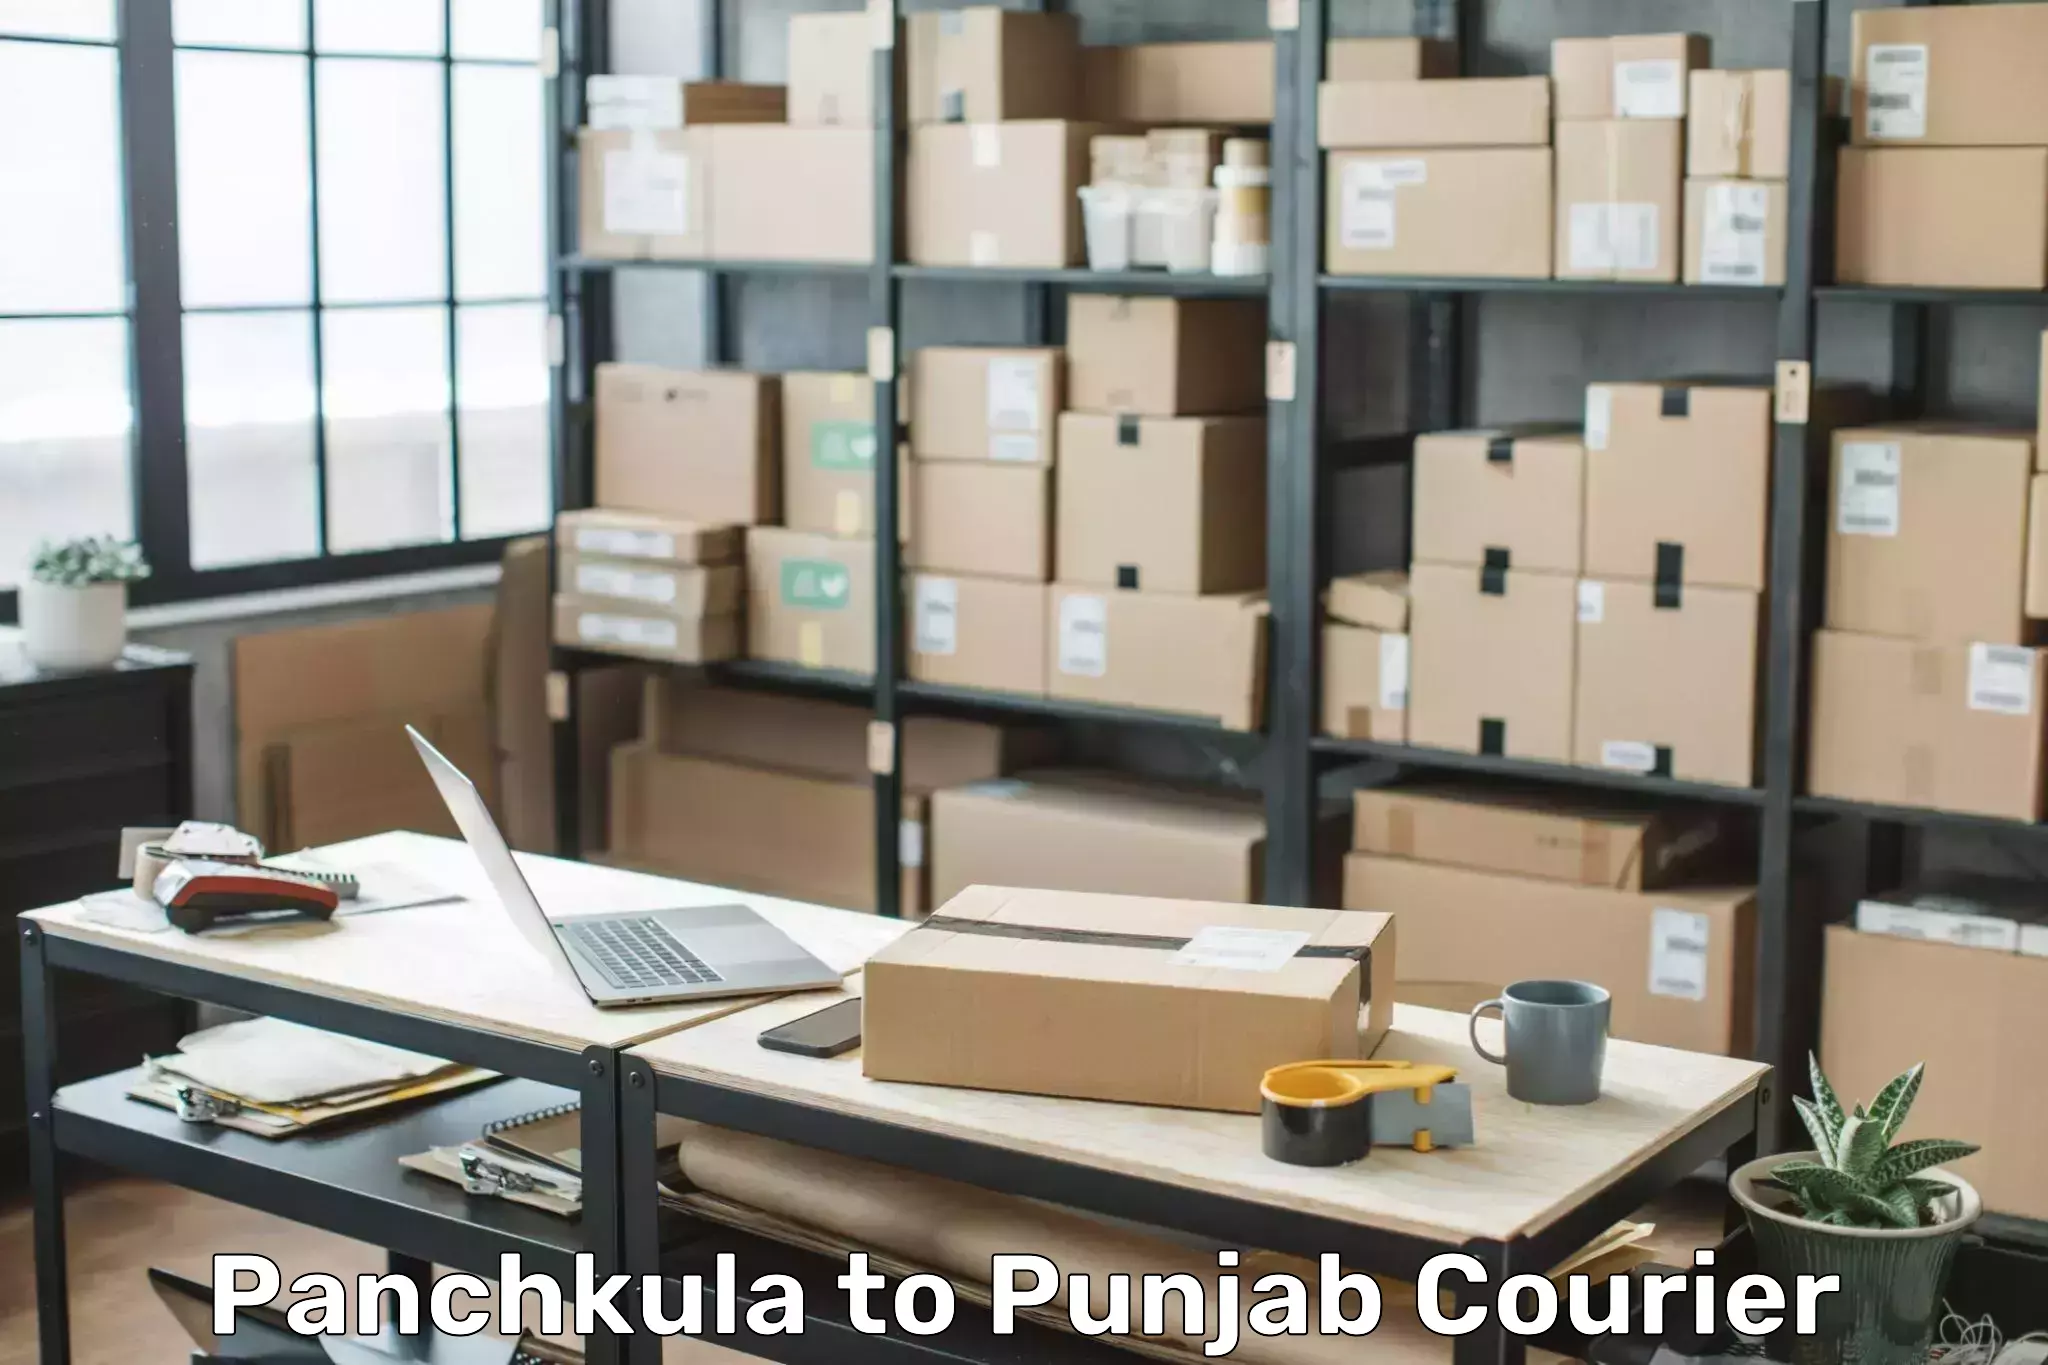 Baggage transport scheduler in Panchkula to Punjab